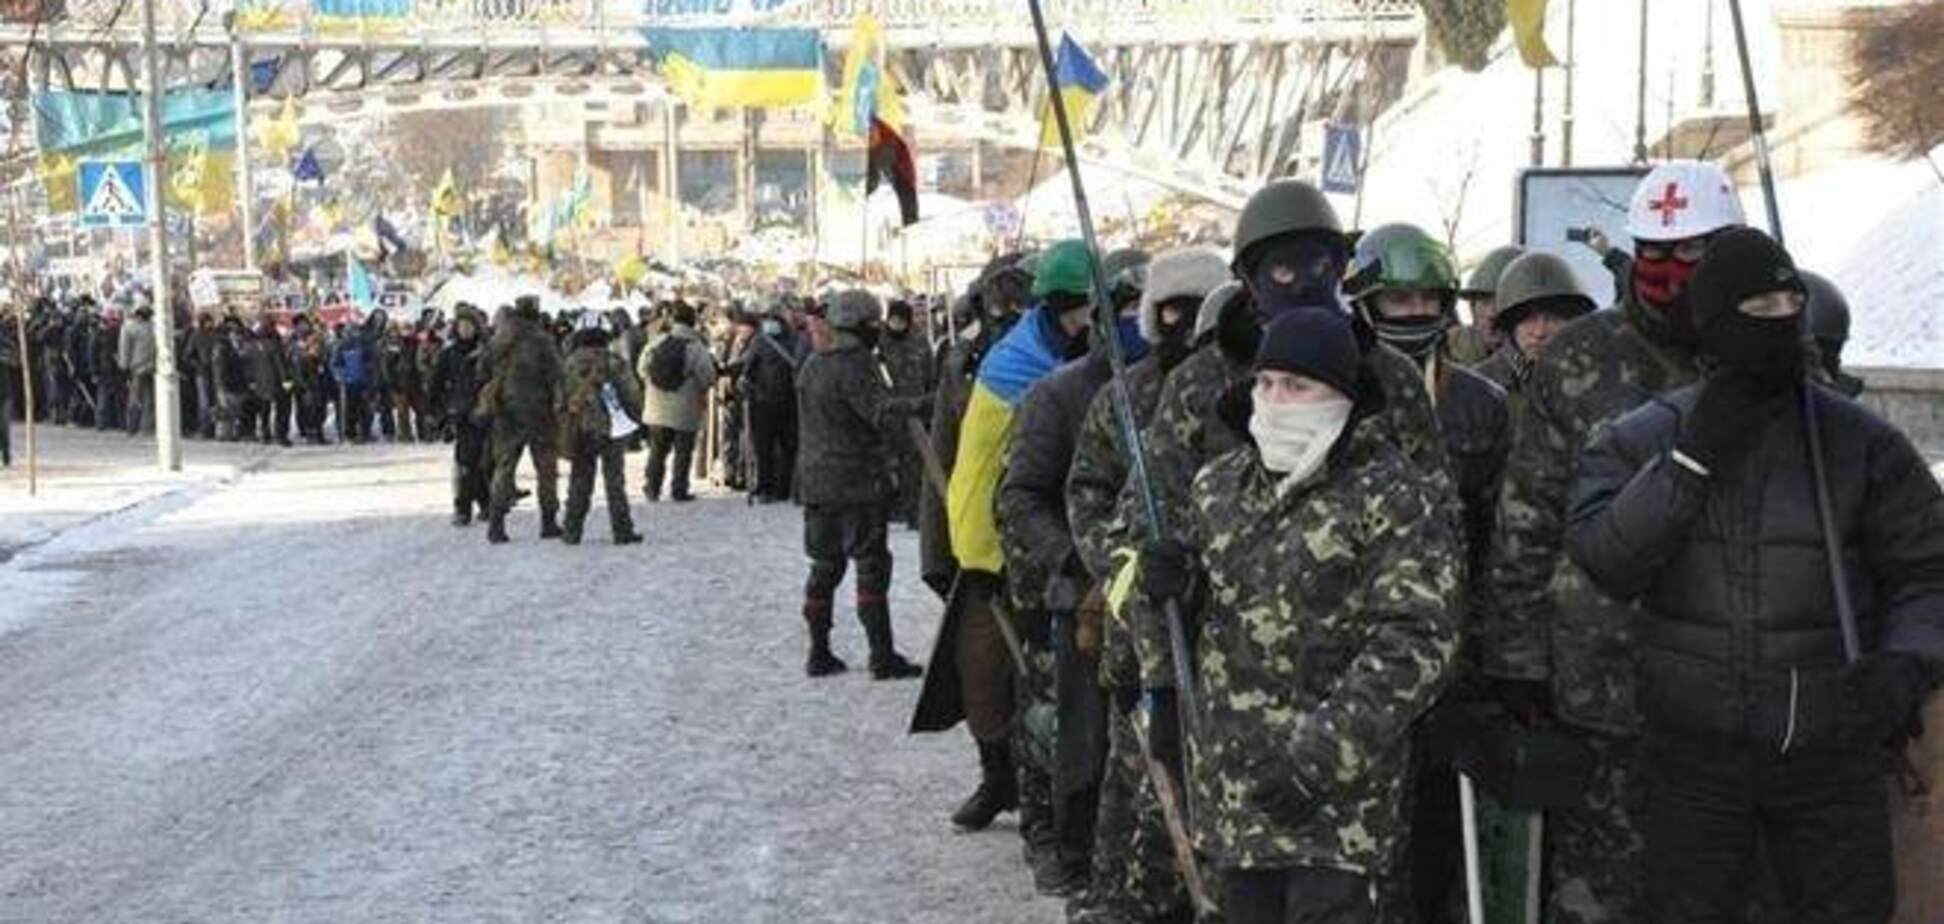 Ситуація в Україні може загостритися - координатор уряду ФРН